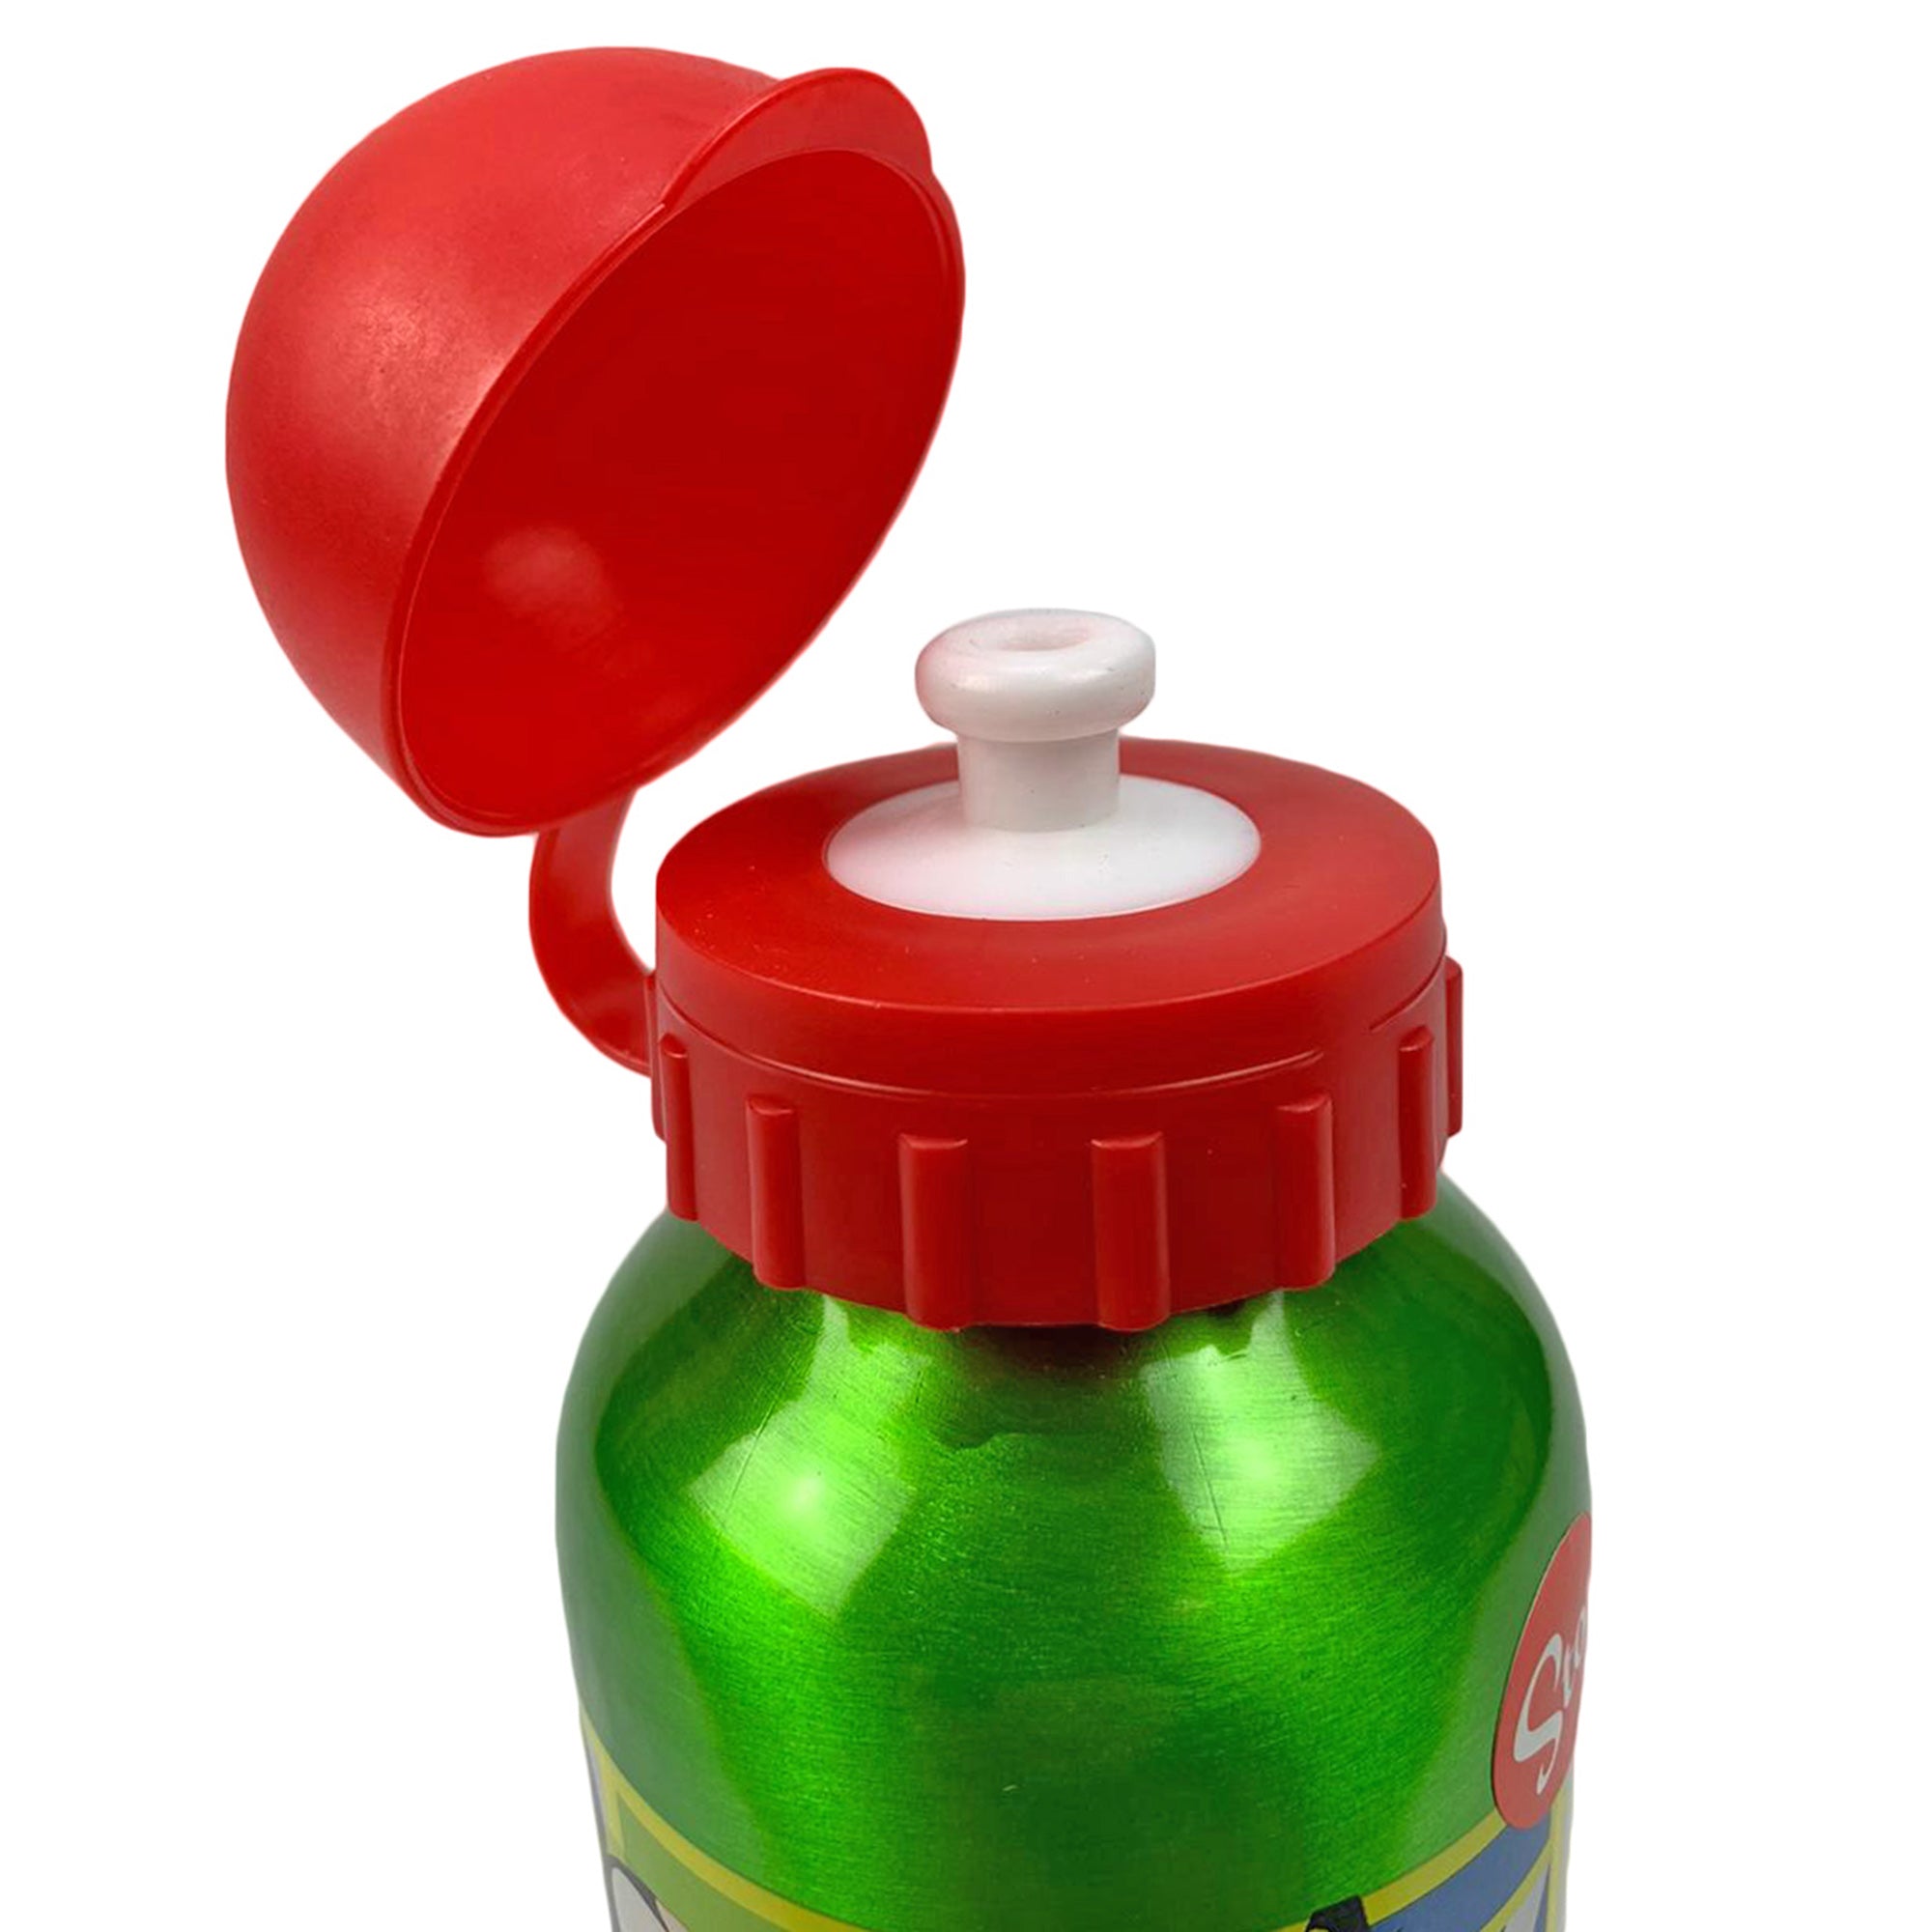 Borraccia Disney Mickey Mouse bottiglia in allumino con beccuccio 400 ml 1619